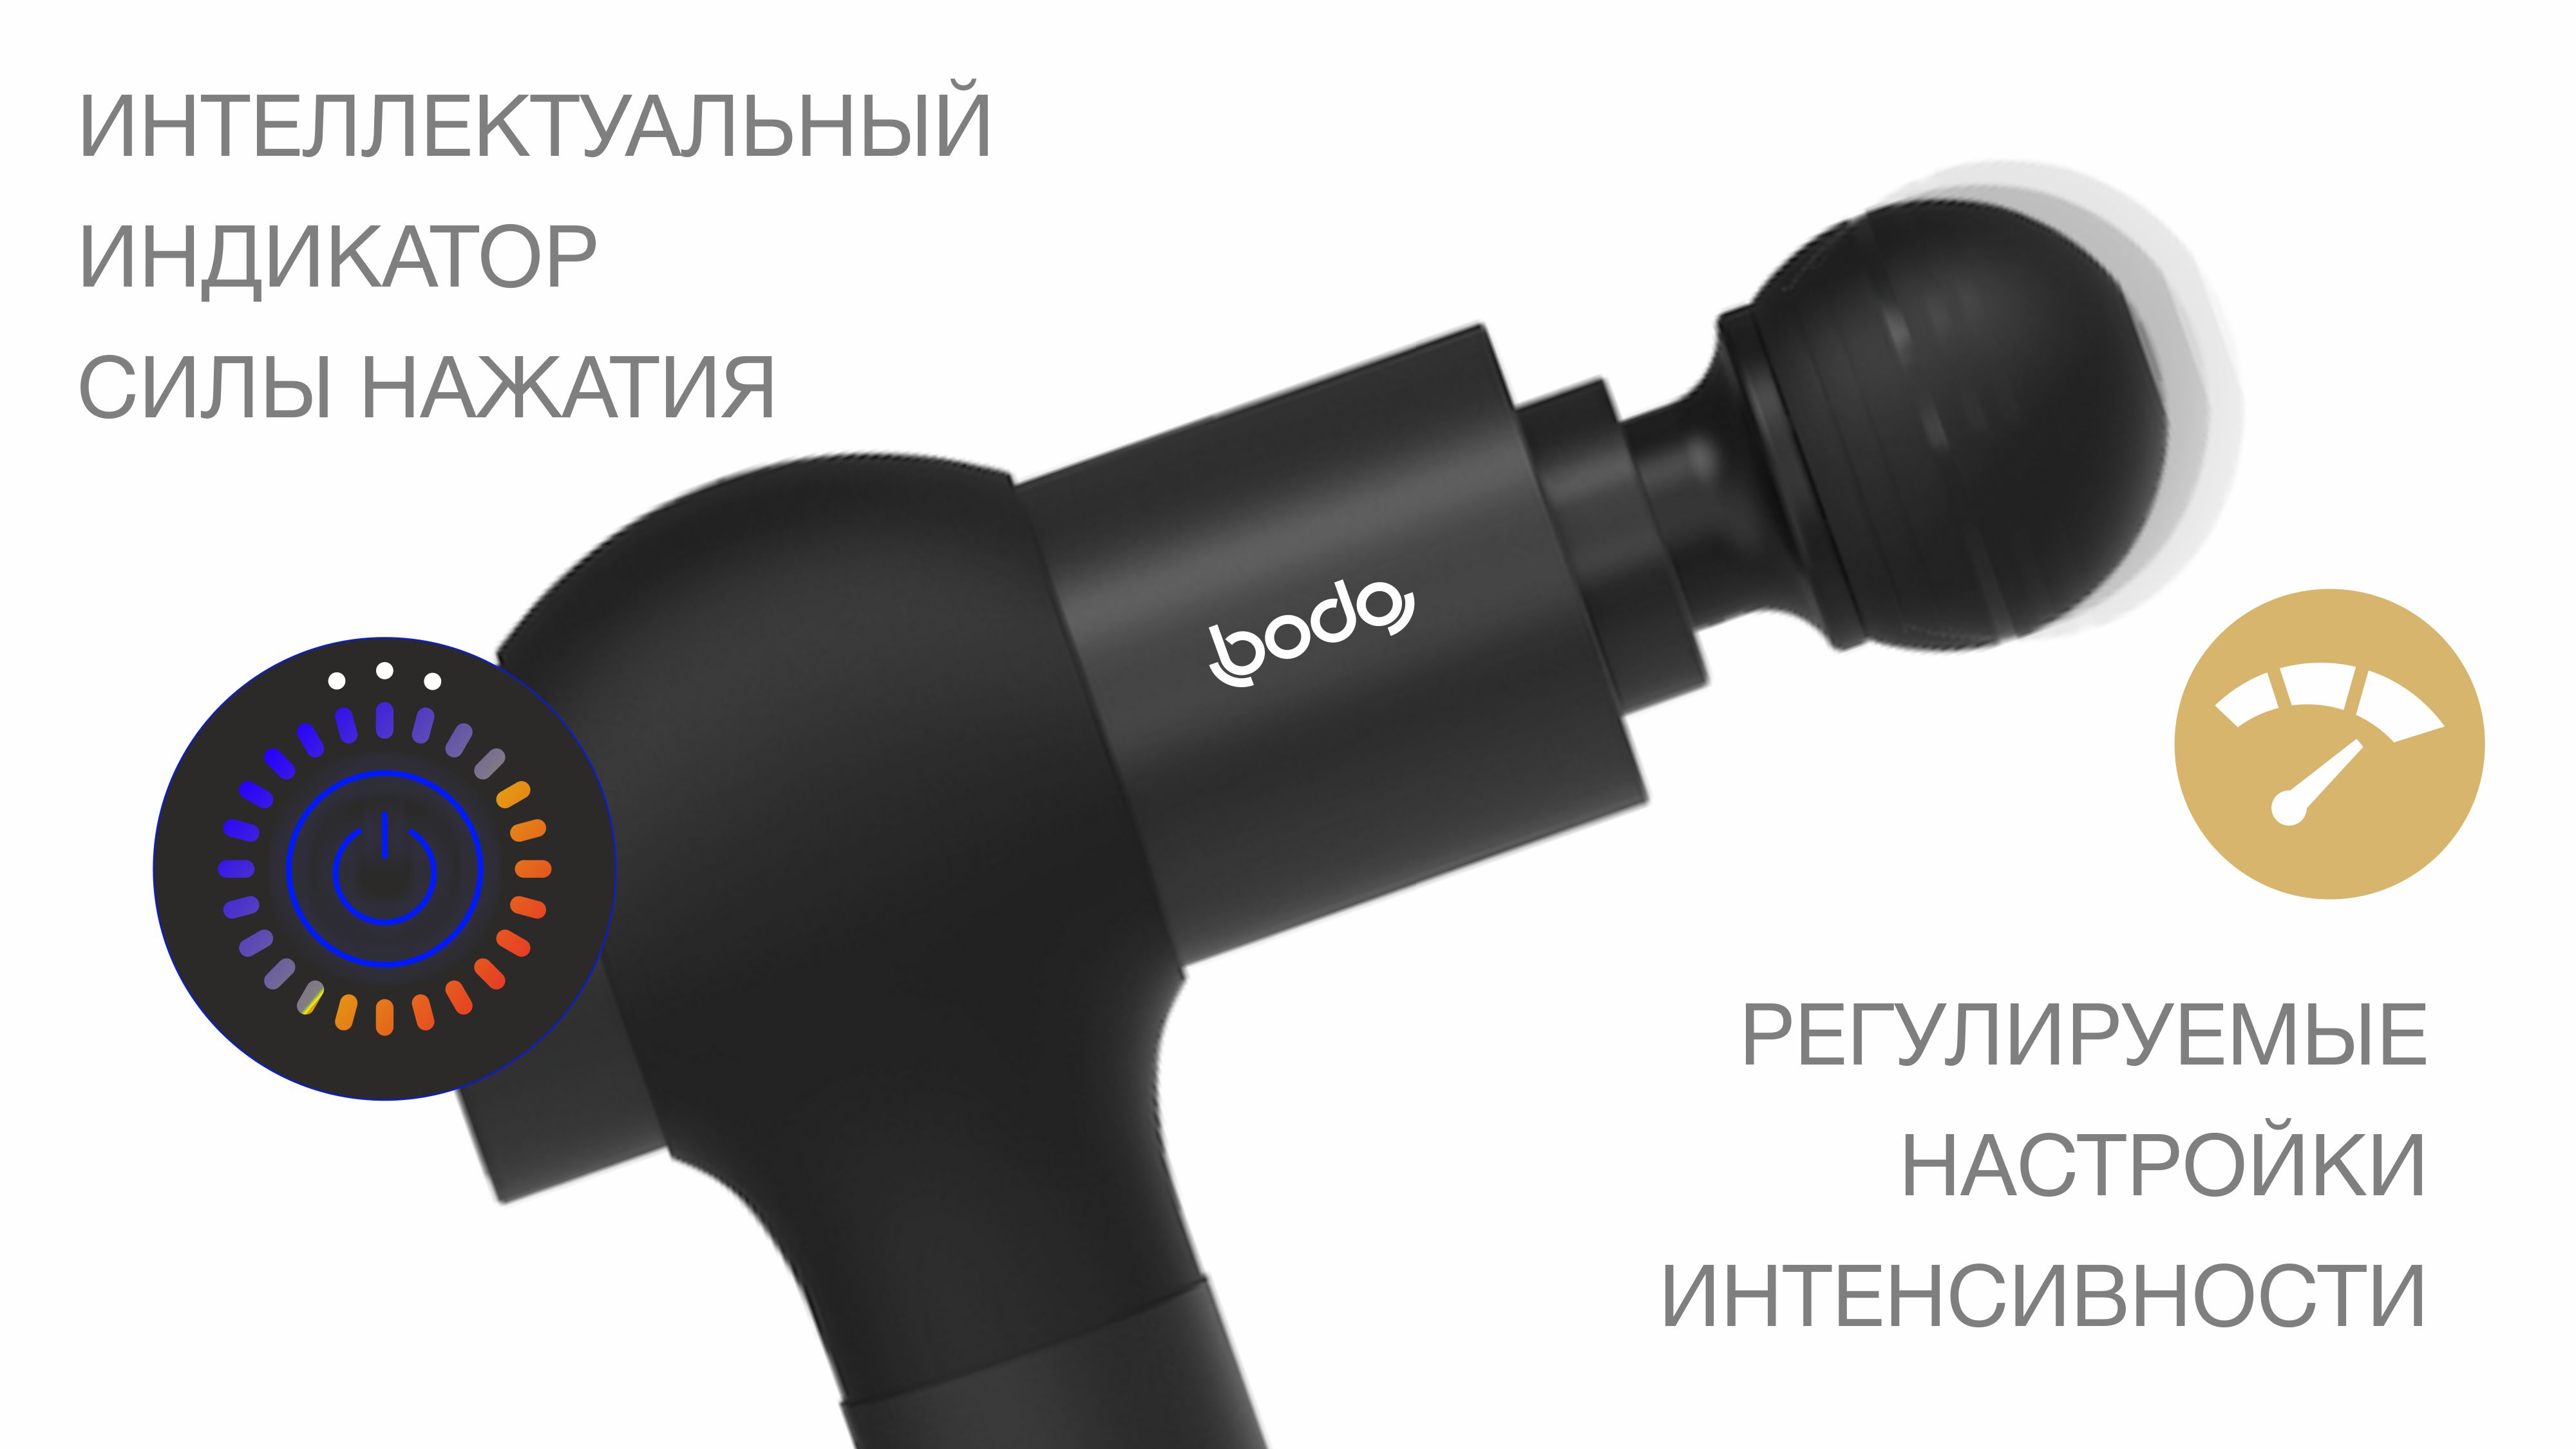 3 уровня интенсивности и интеллектуальный LED-индикатор - Перкуссионный массажер Bodo Body Gun